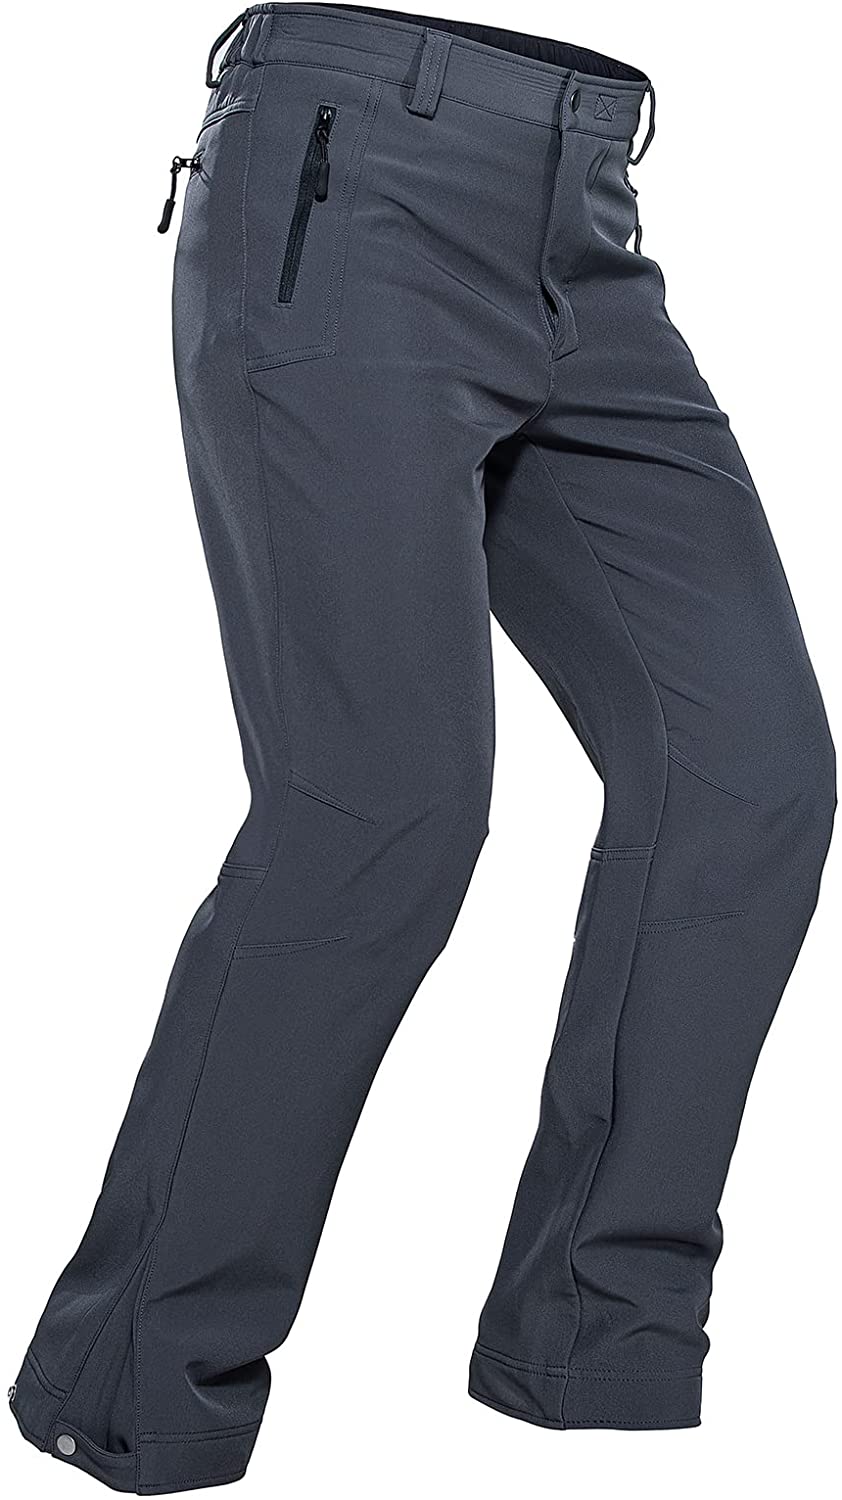 Men's Winter Pants Fleece Lined Ski Snow Pants Water Resistant